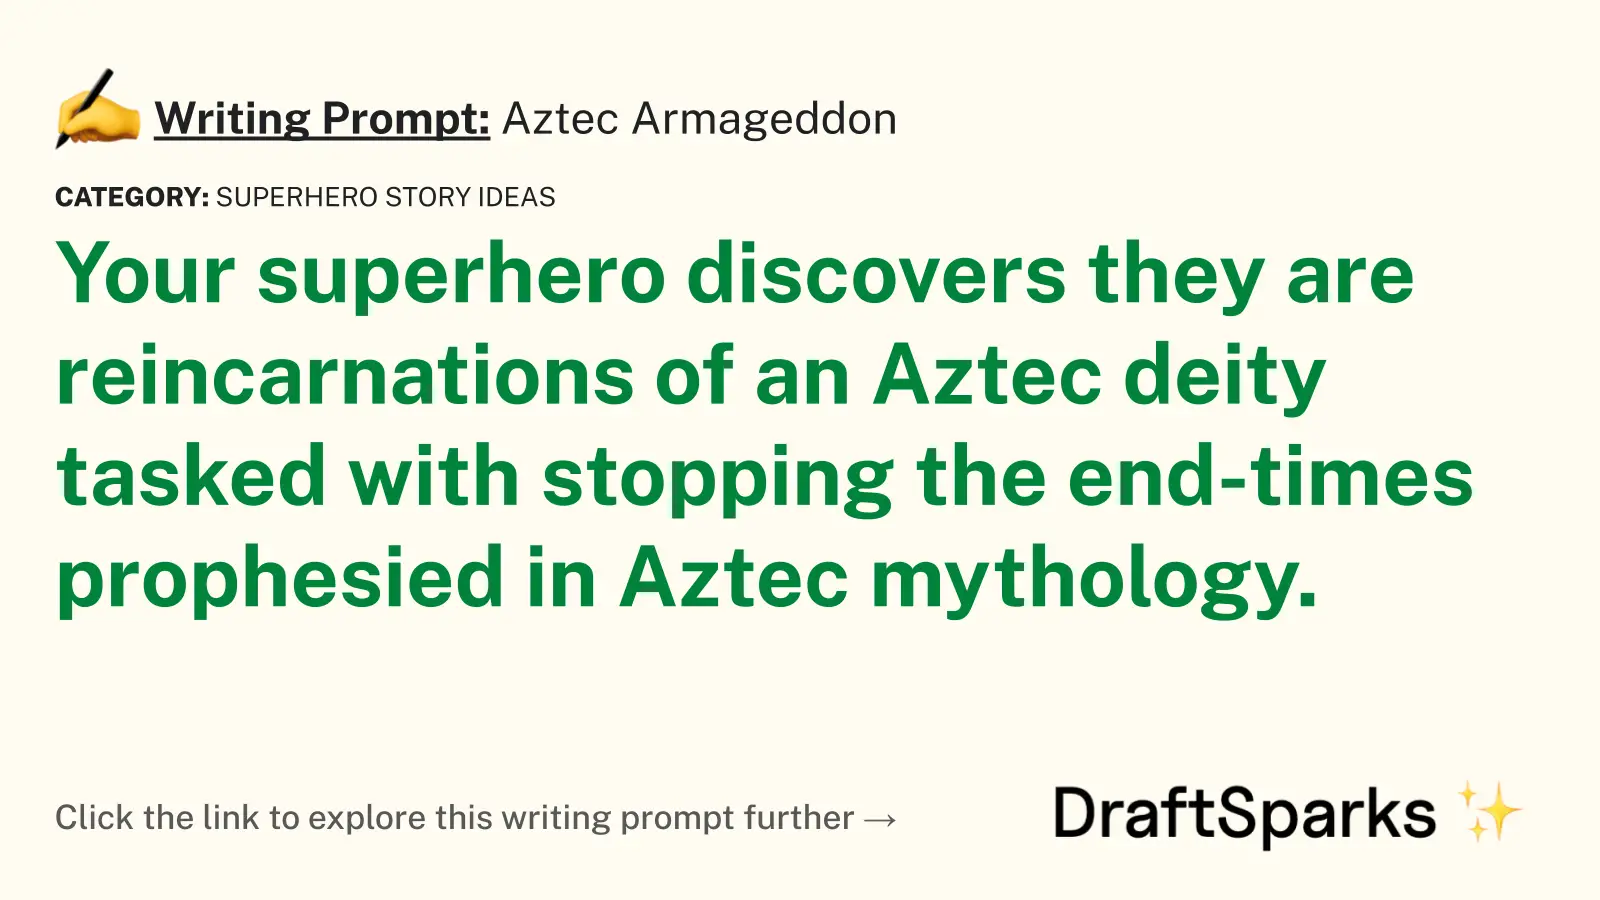 Aztec Armageddon